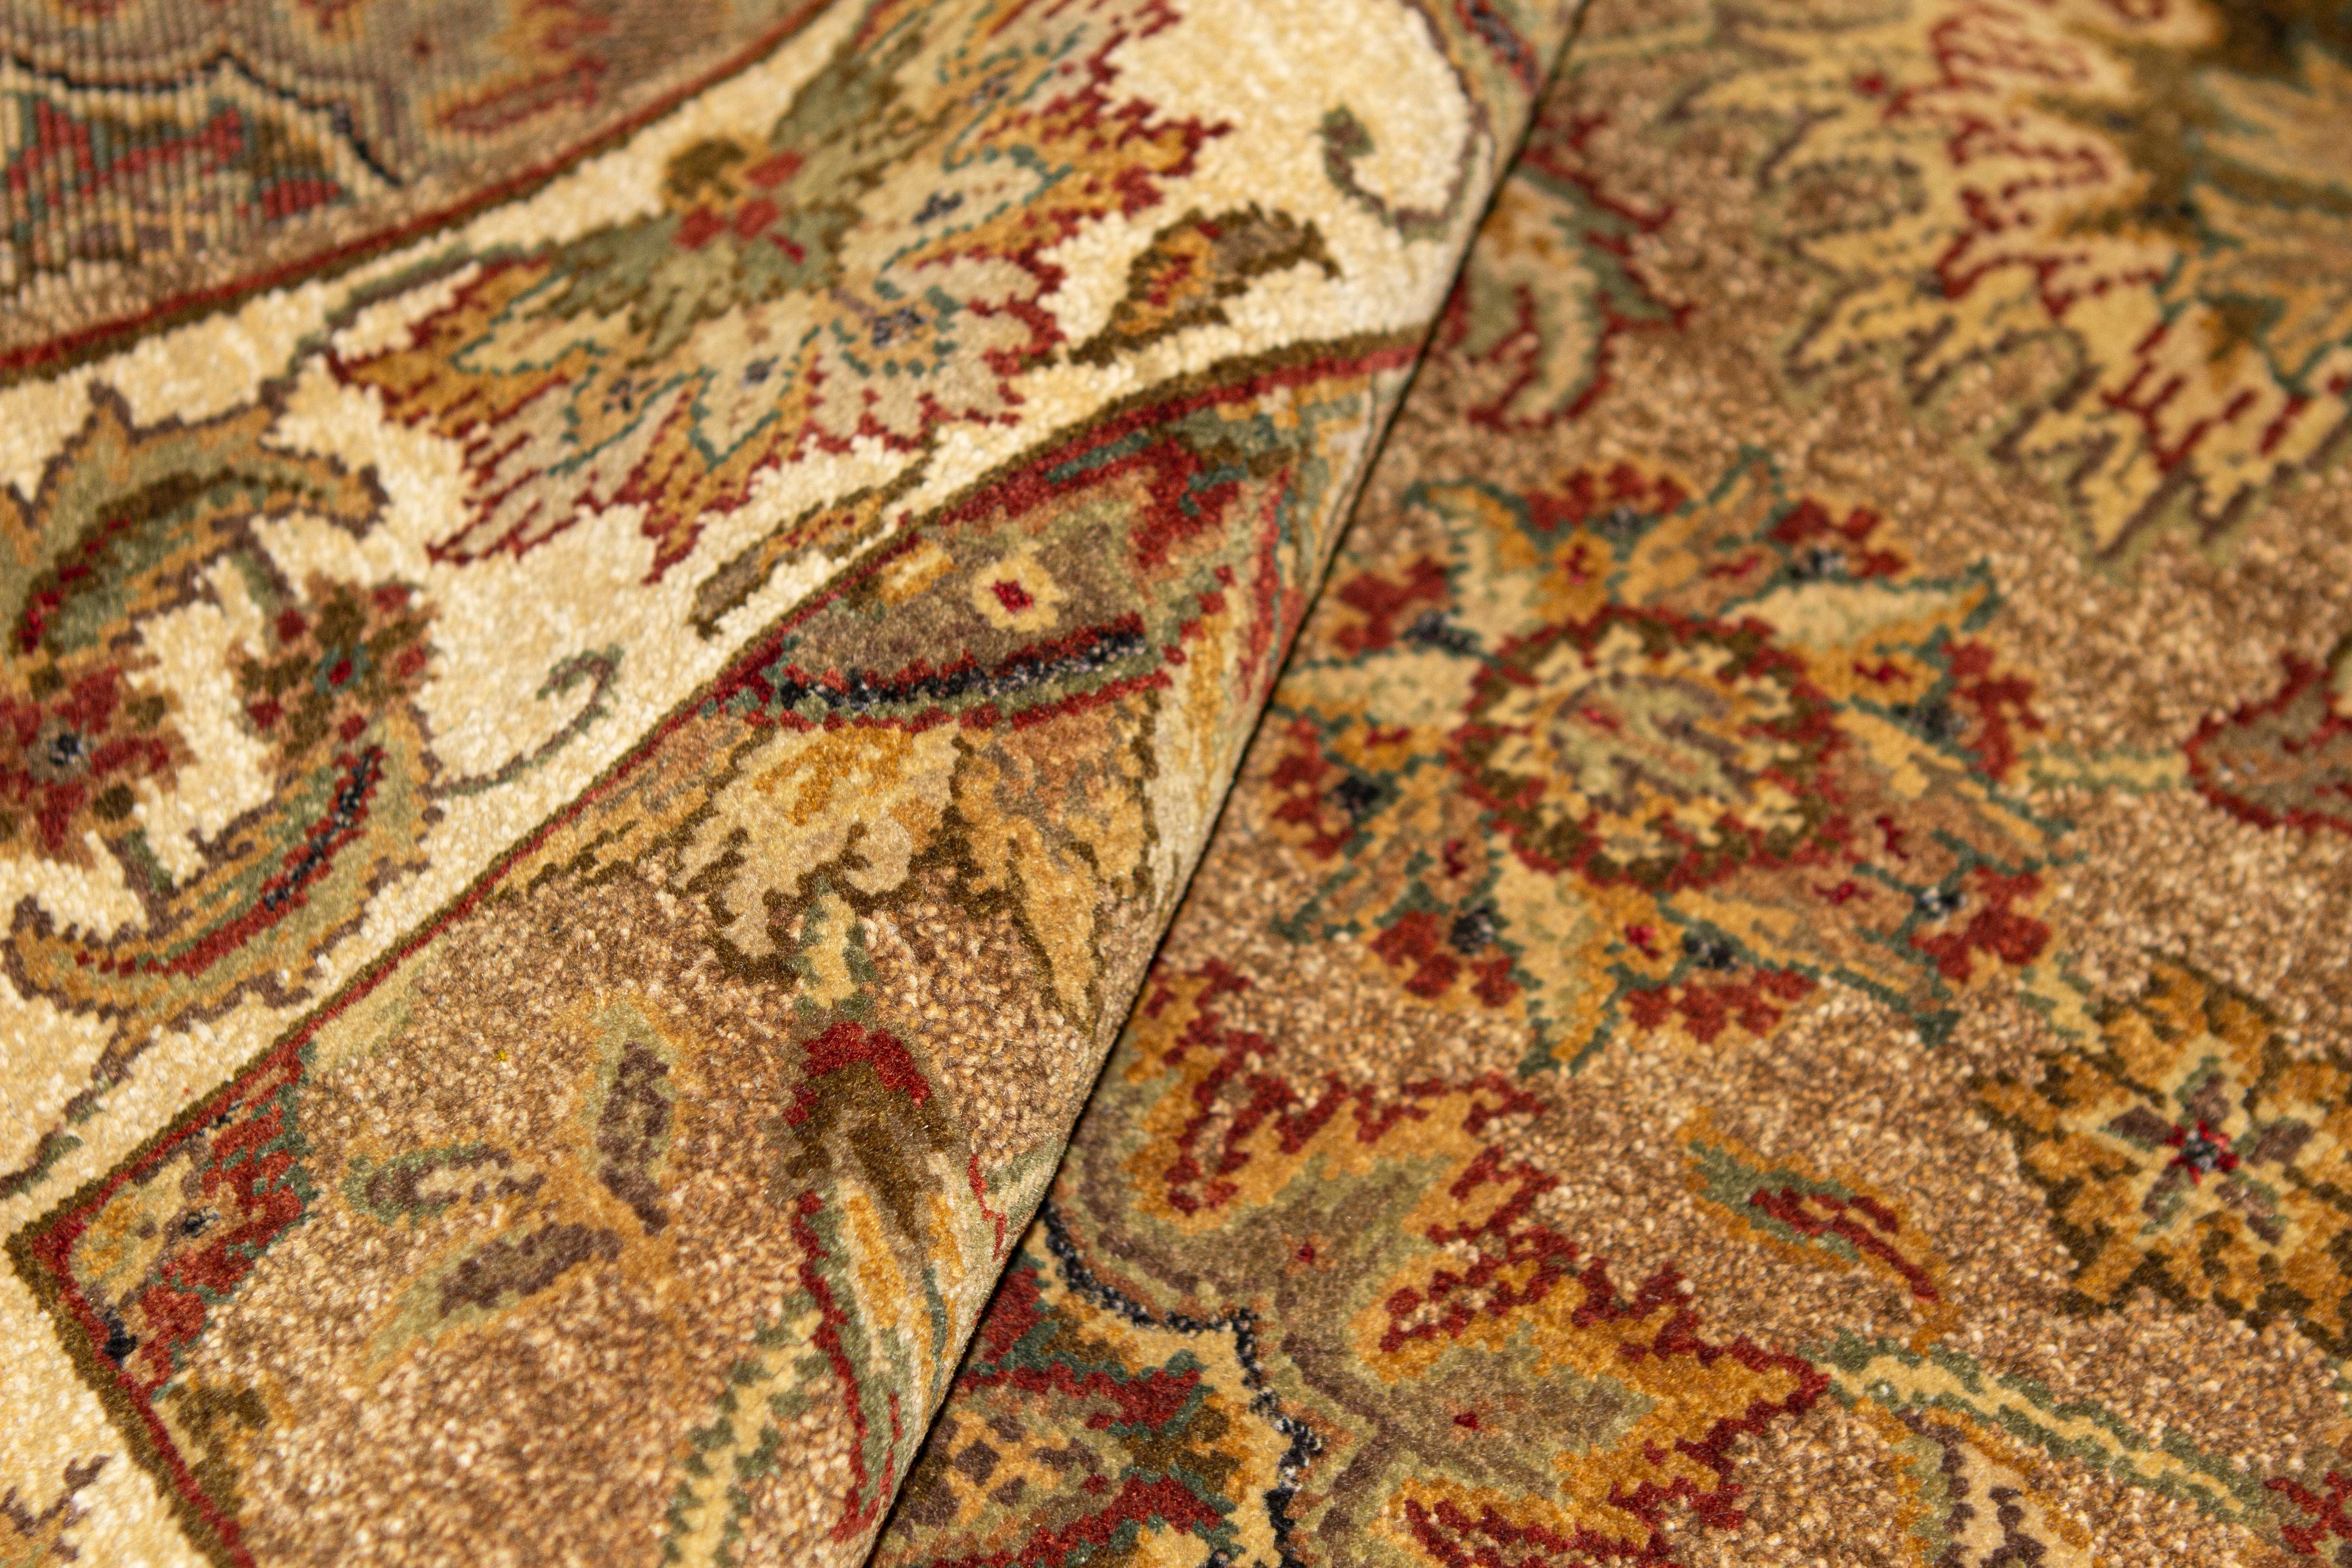 Eine Einführung in die meisterhafte Teppichweberei aus Indien. Diese Designs sind Wiederbelebungen von Agra-Mustern aus der orientalischen Mughul-Periode. Was diese handgewebten Agra-Muster auszeichnet, sind die großen floralen Palmetten. Das Neue